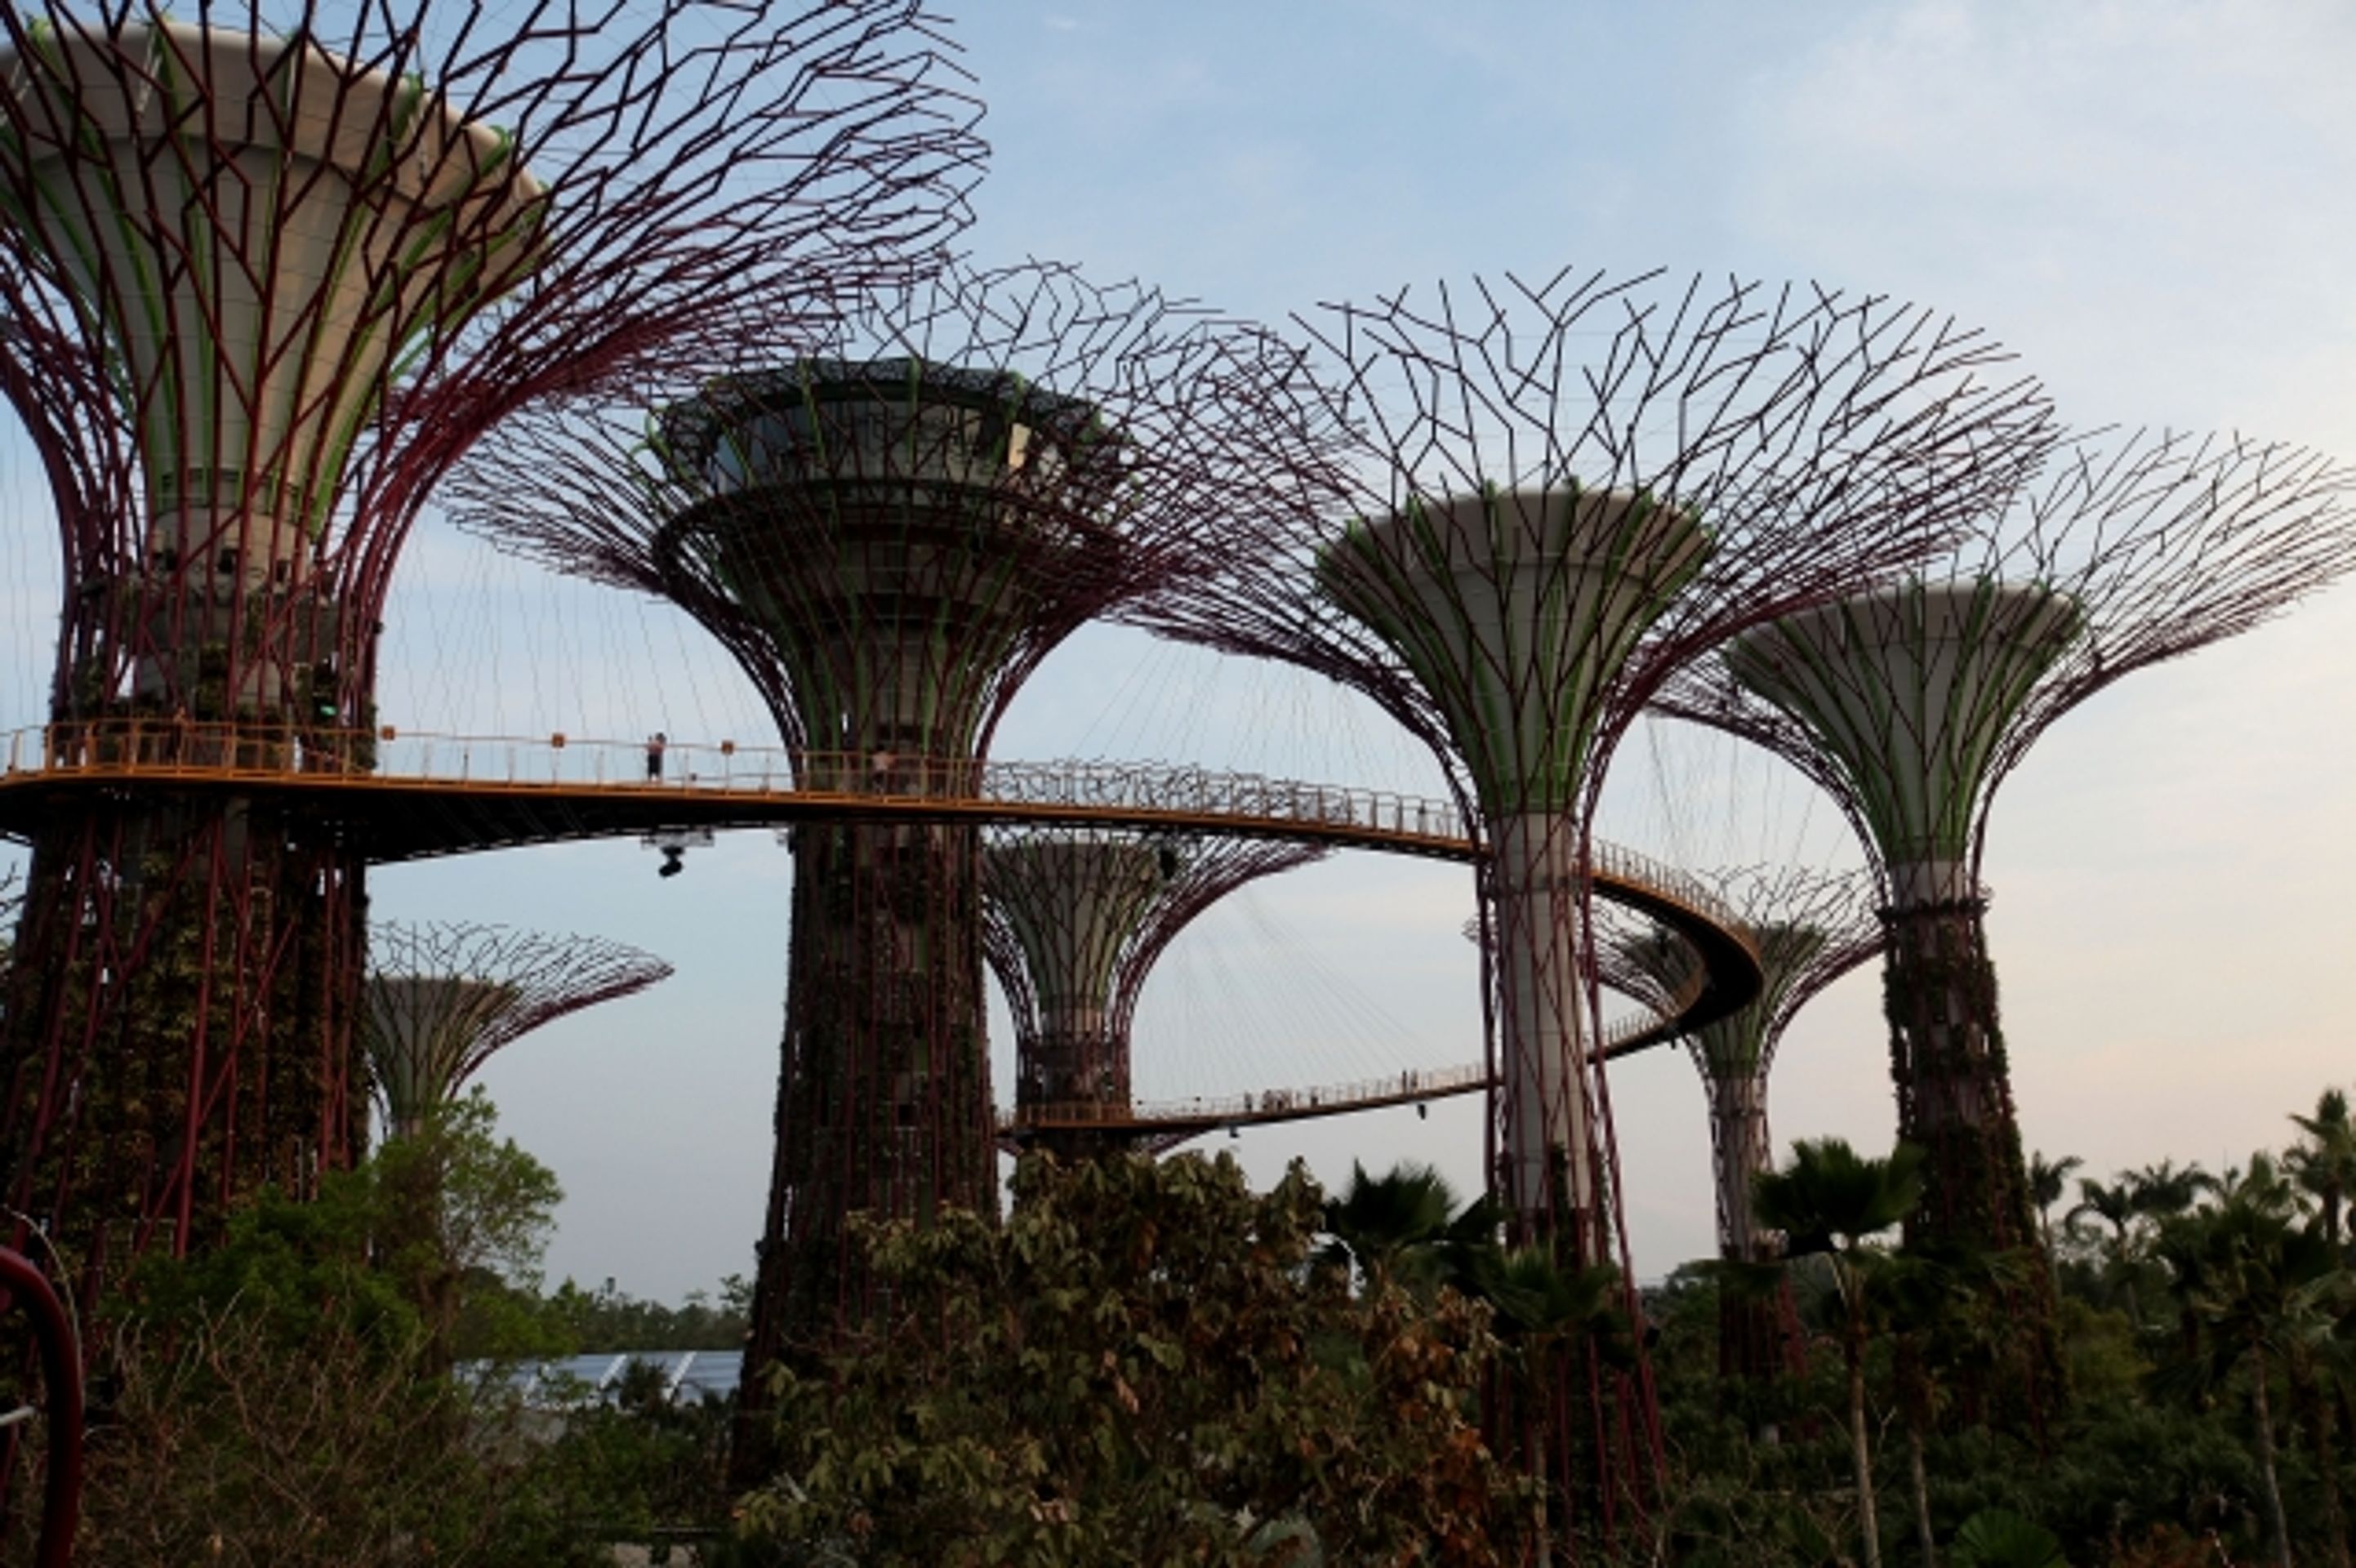 Marina Bay Sands 1 - Zahrada budoucnosti v Singapuru (1/6)